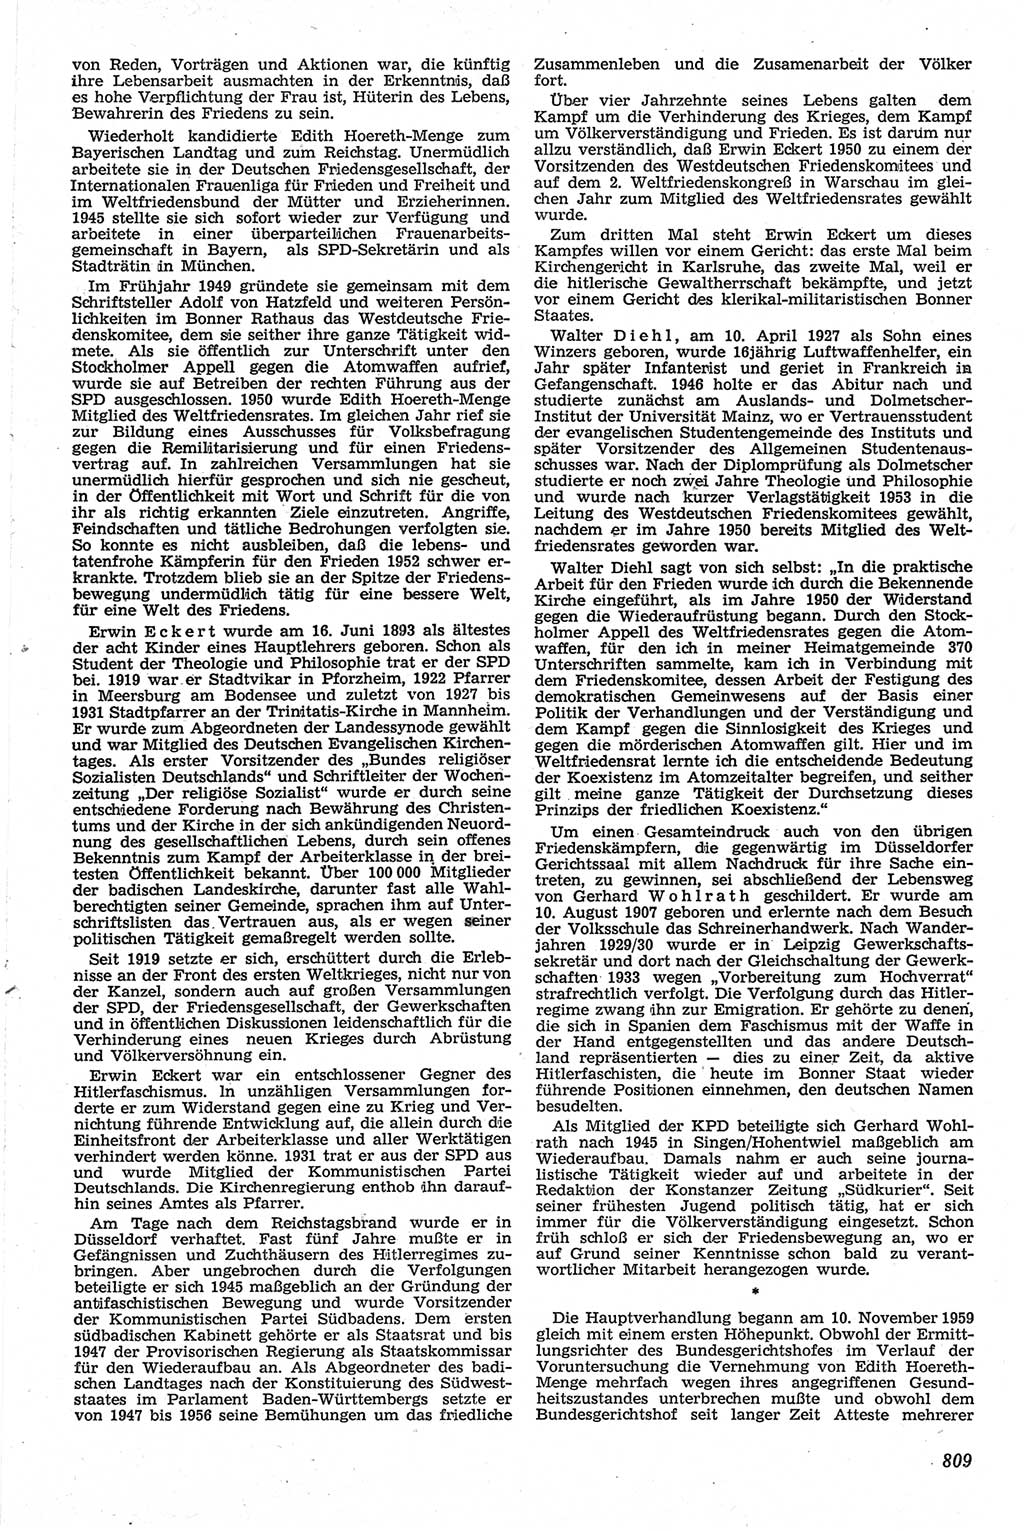 Neue Justiz (NJ), Zeitschrift für Recht und Rechtswissenschaft [Deutsche Demokratische Republik (DDR)], 13. Jahrgang 1959, Seite 809 (NJ DDR 1959, S. 809)